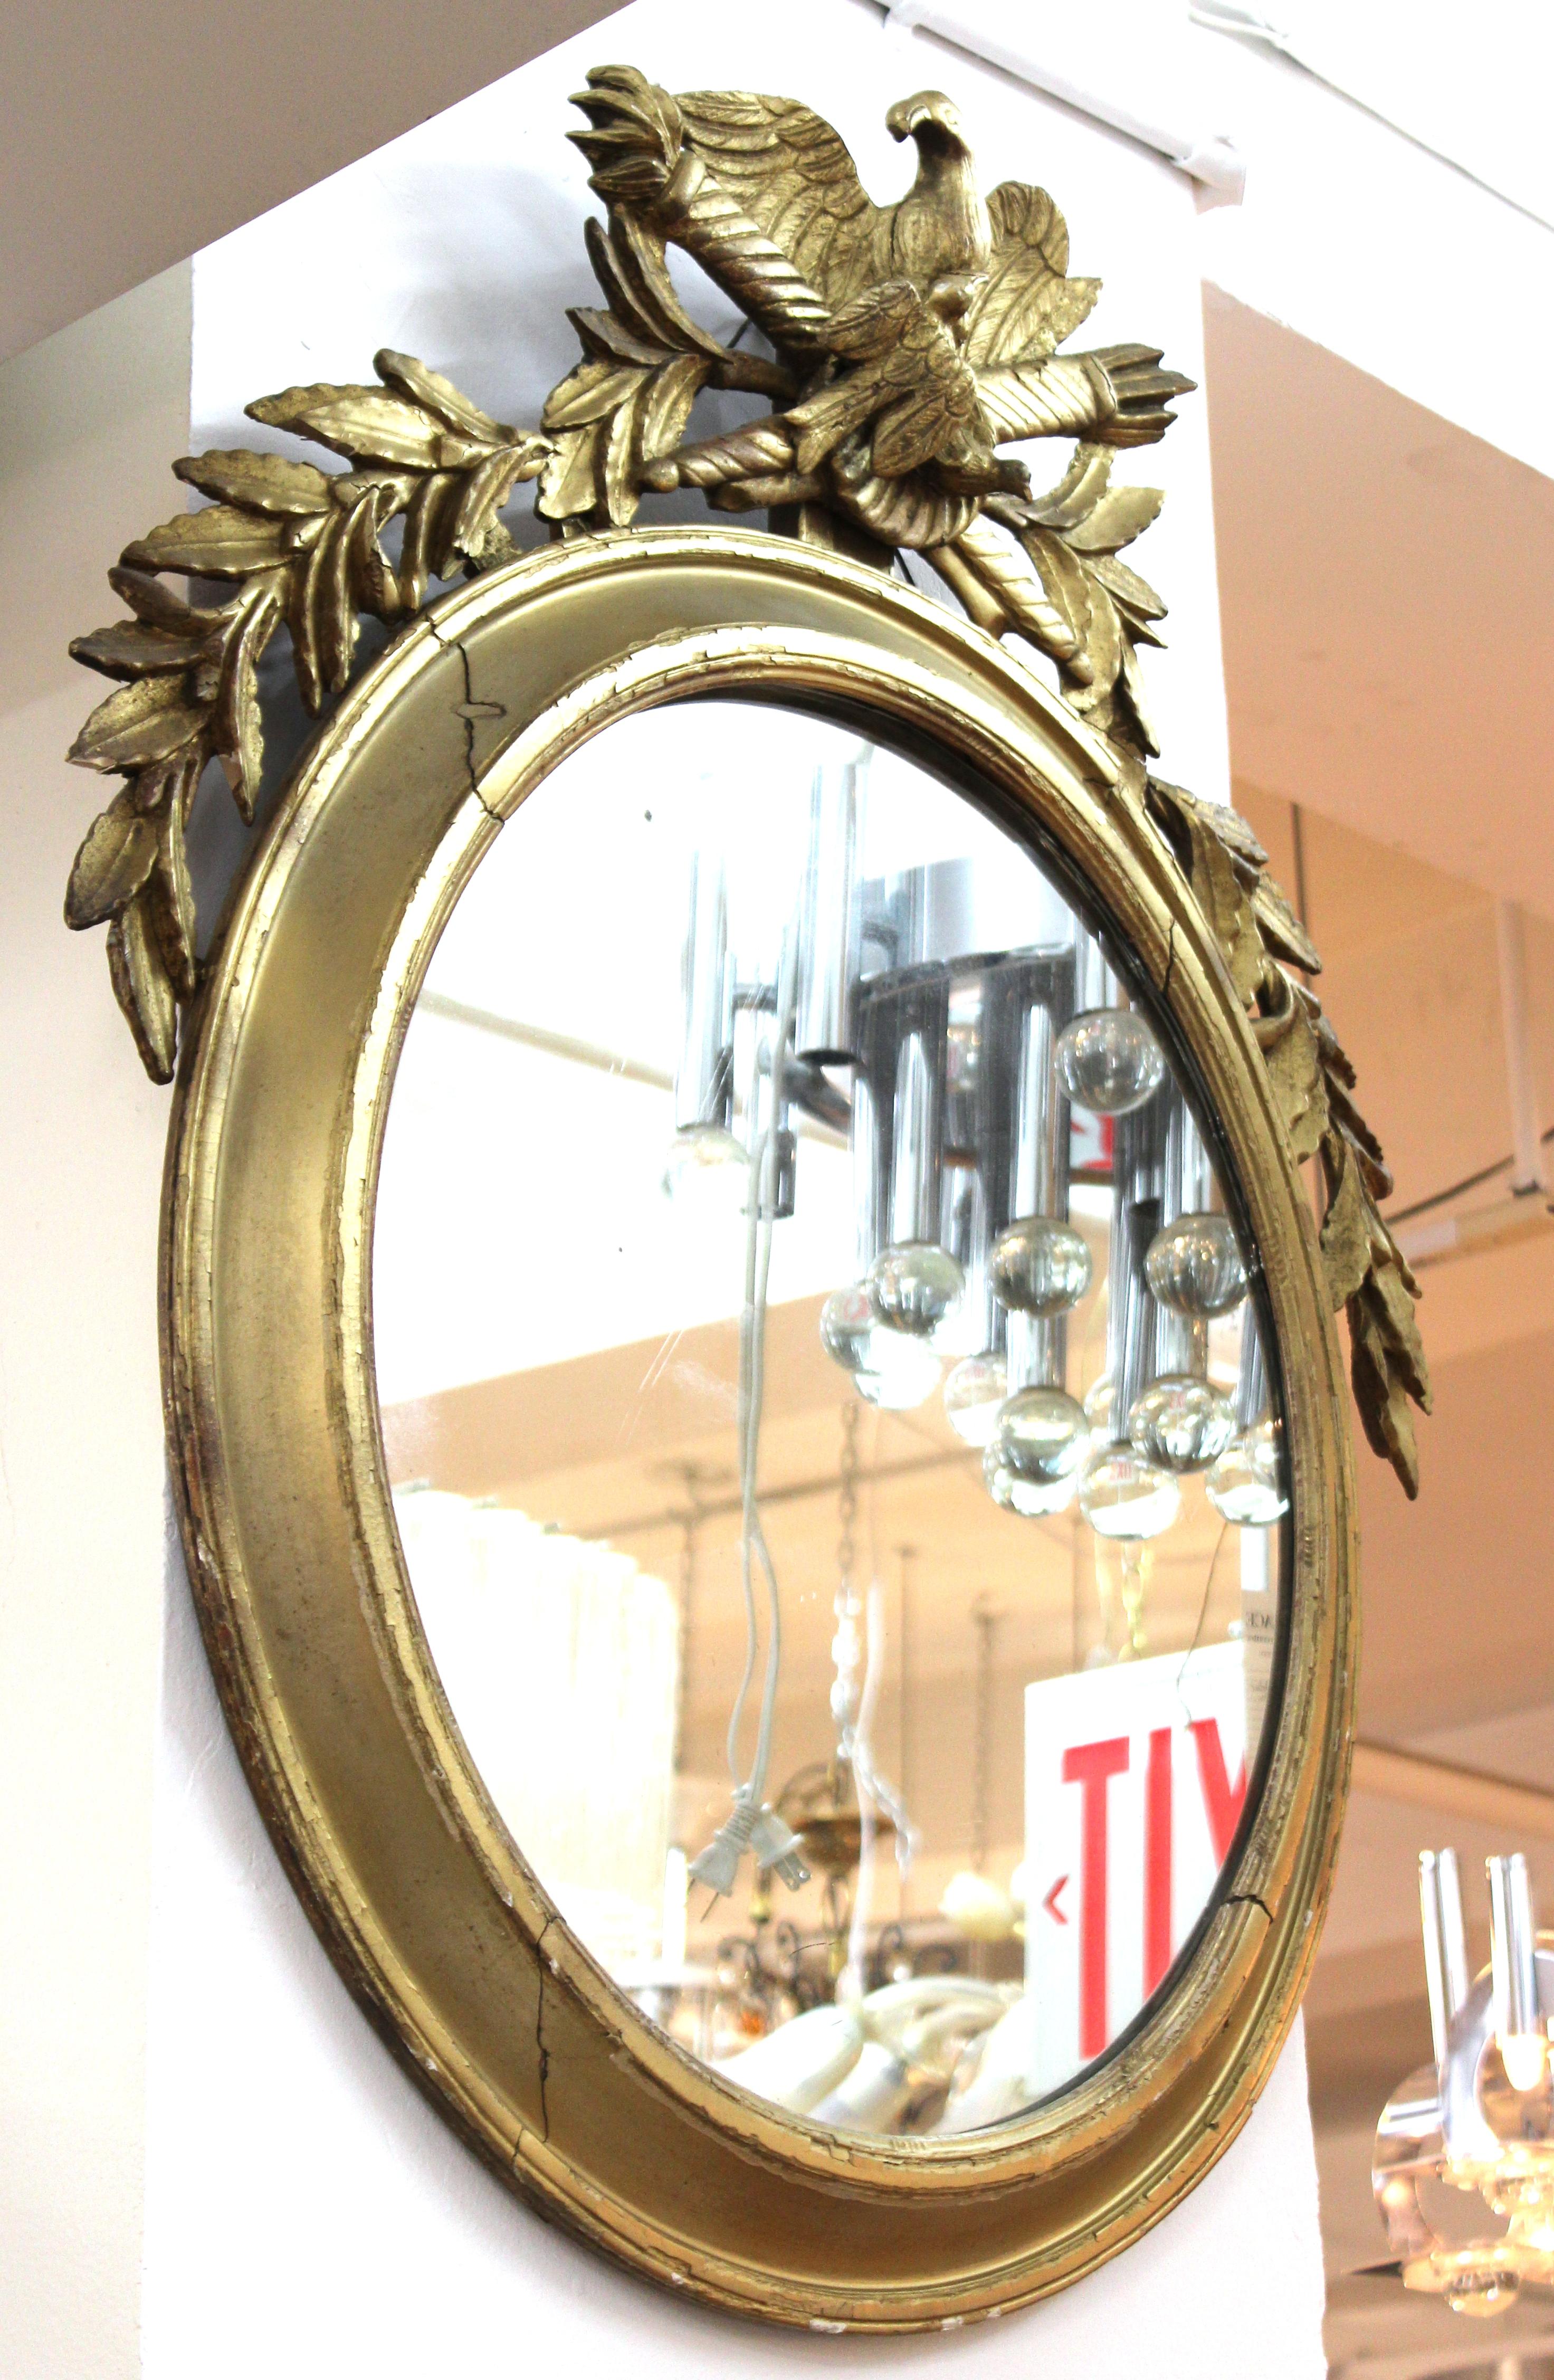 Miroir mural oblong néoclassique continental en bois doré. La pièce présente des trophées flanqués d'un aigle sur le dessus. Fabriqué au 19e siècle.

Concessionnaire : S138XX